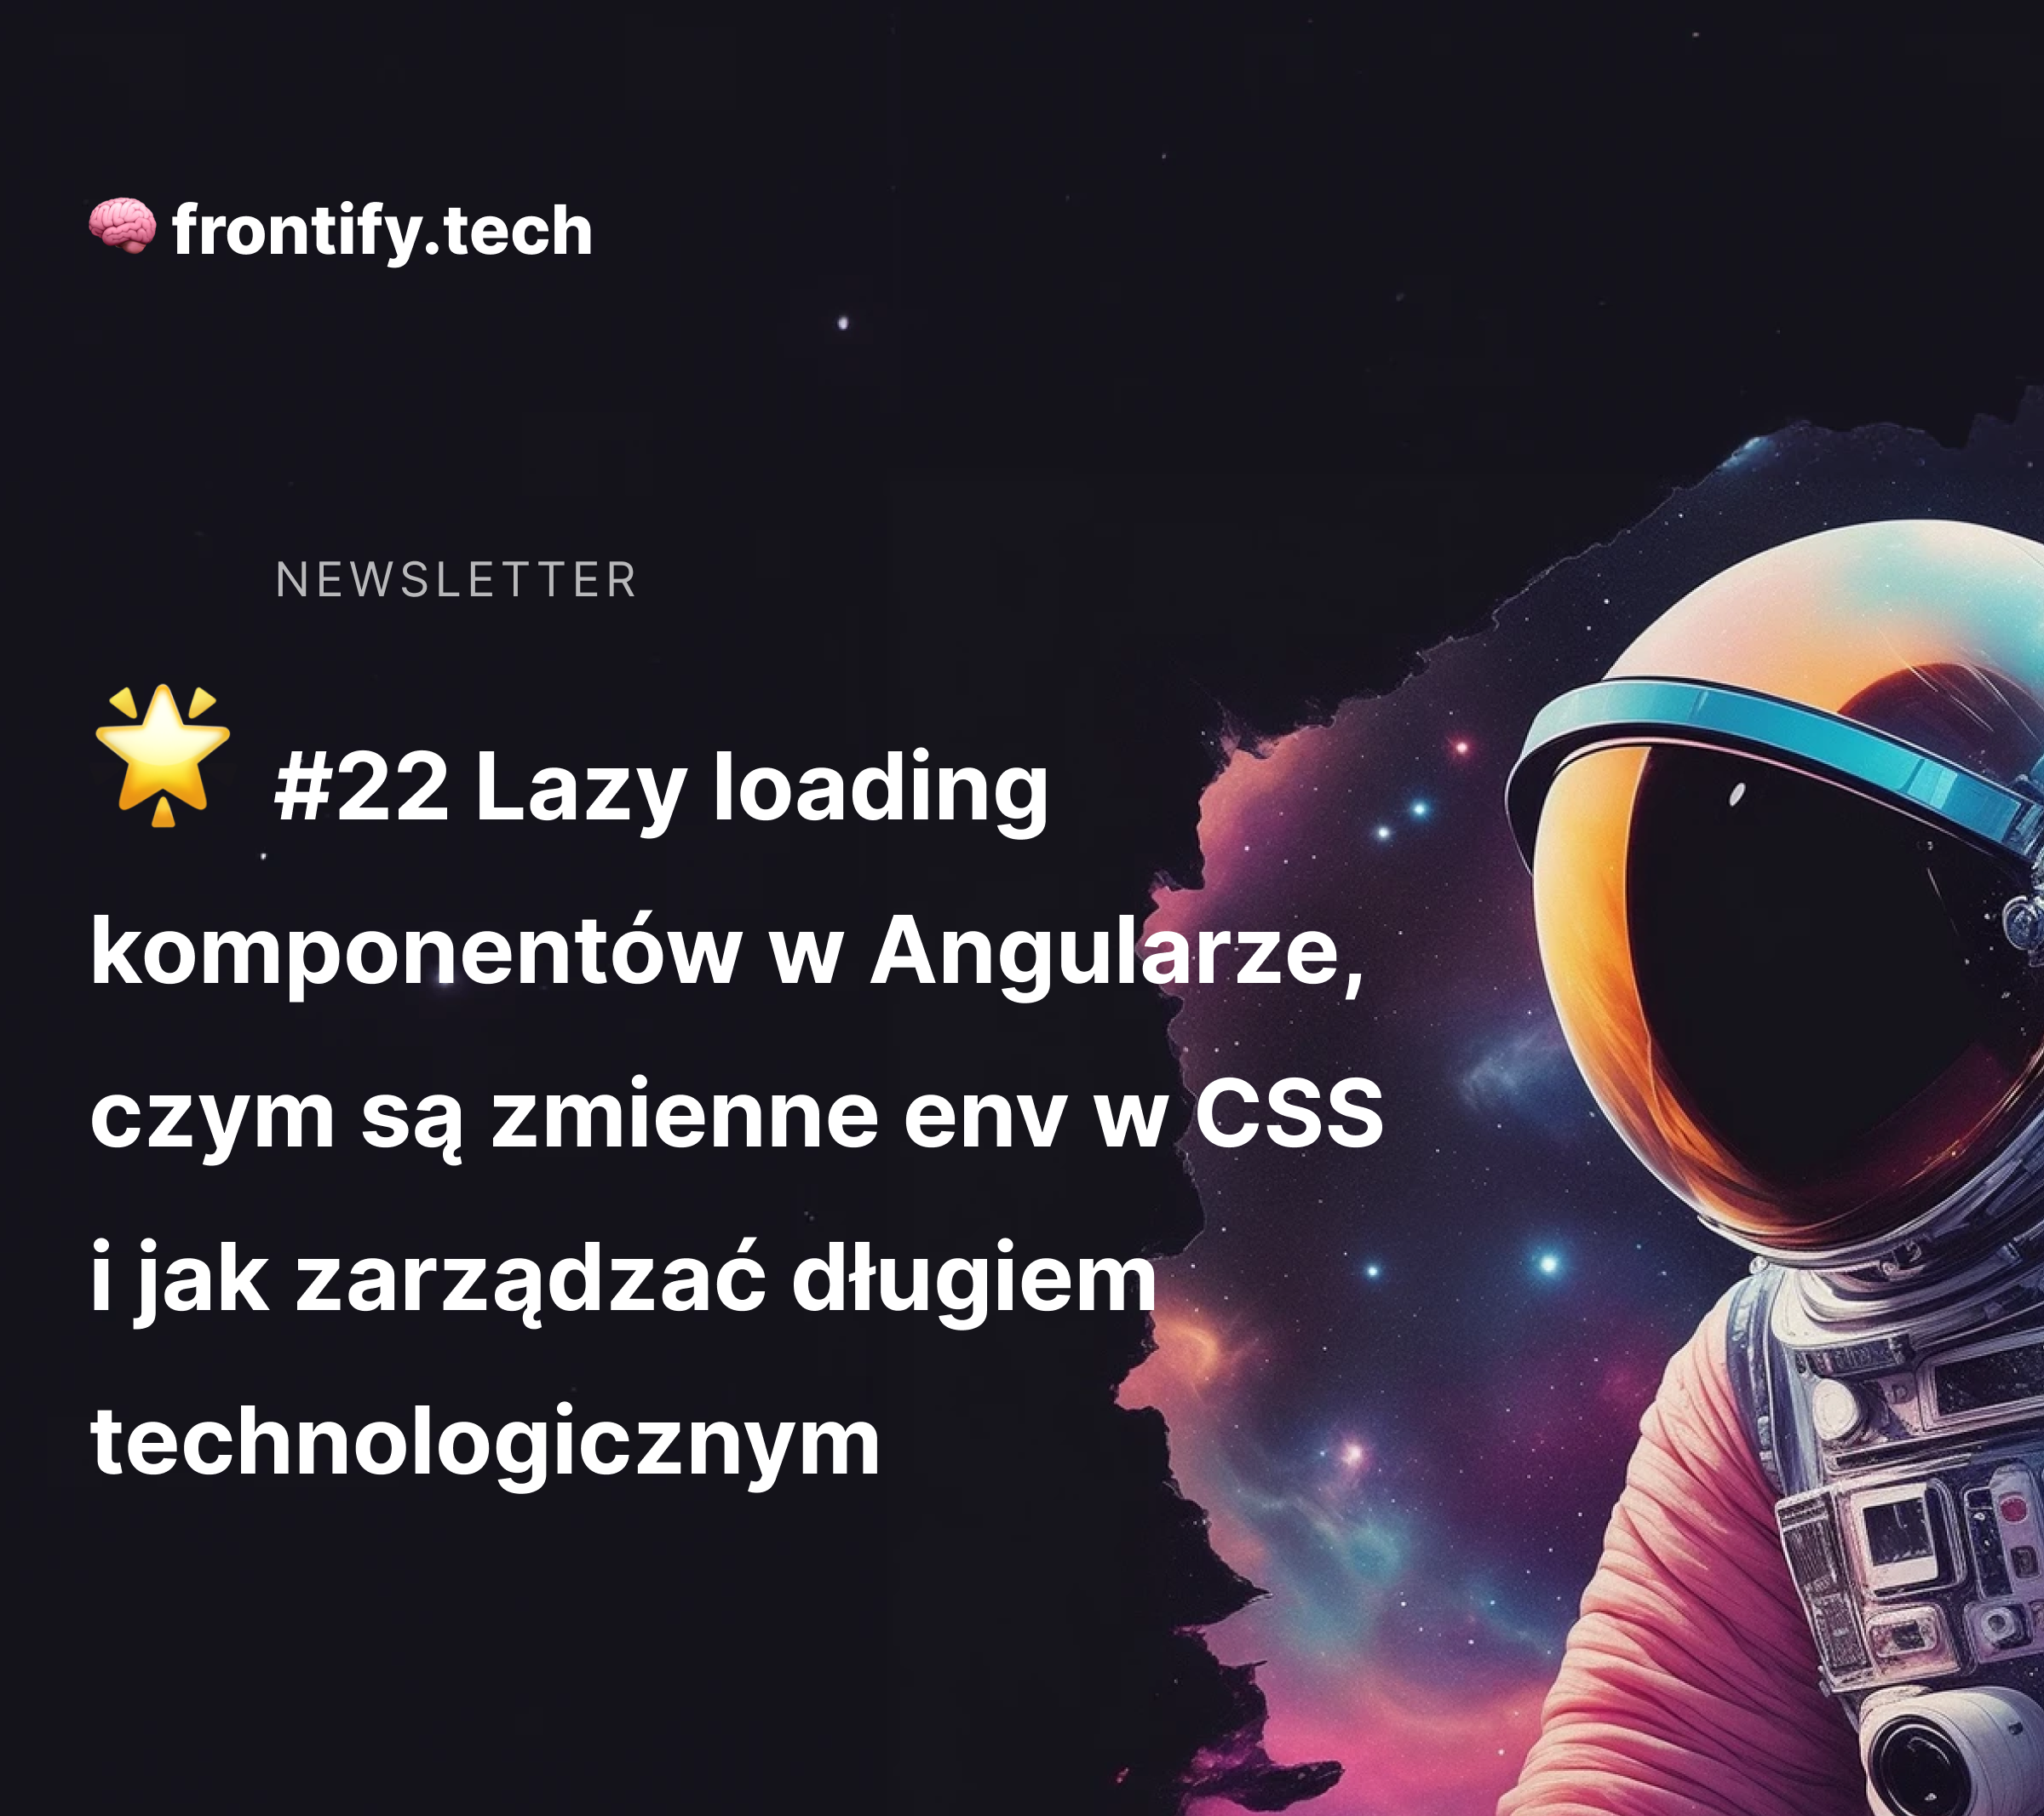 🌟 #22 Lazy loading komponentów w Angularze, czym są zmienne env w CSS i jak zarządzać długiem technologicznym.